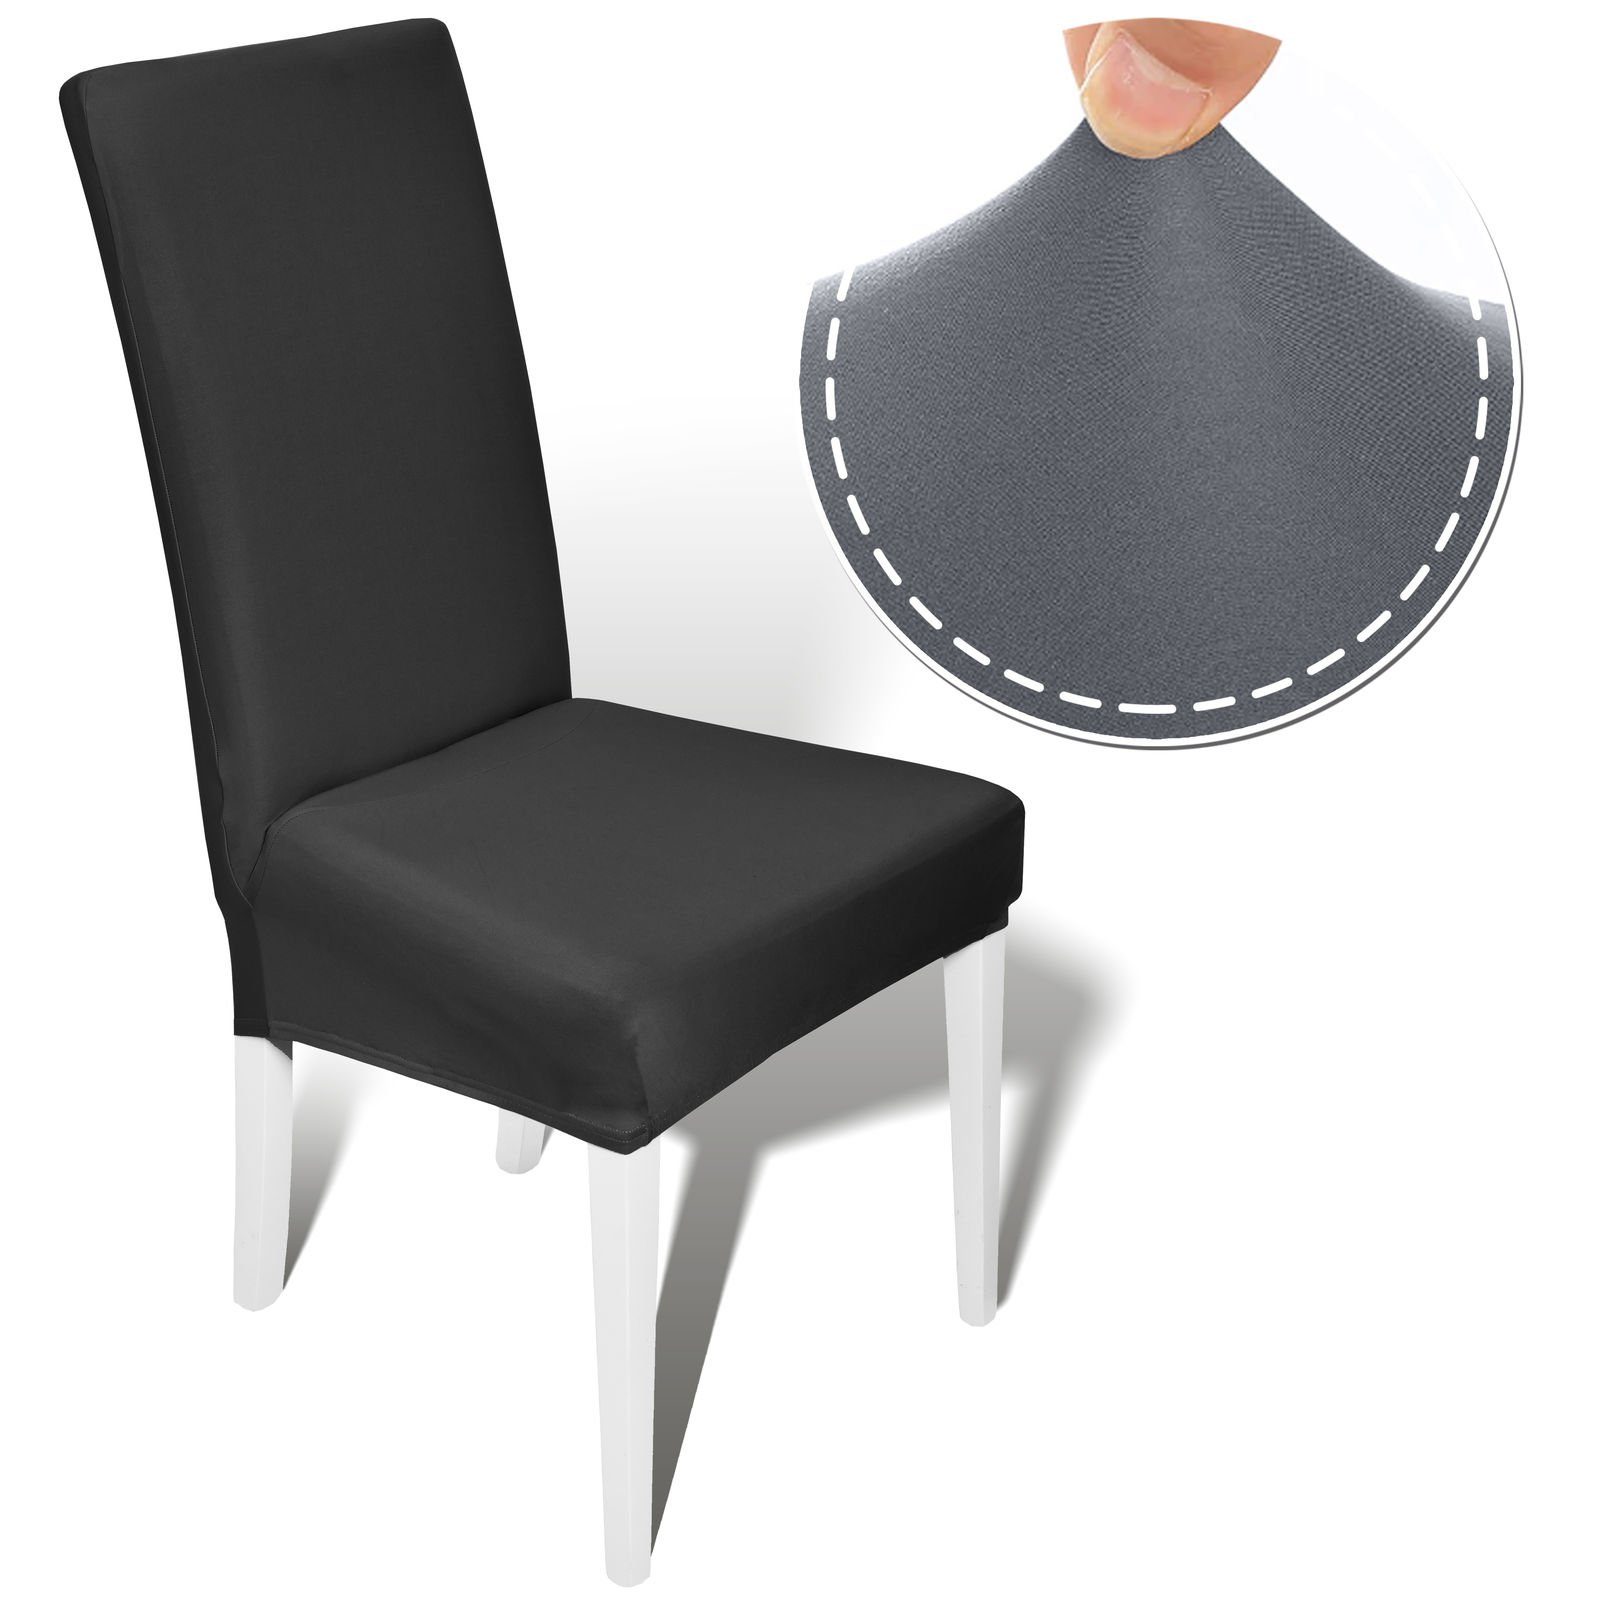 Stuhlhusse Stretch Stuhlüberzug Stuhlbezug Stretchhusse Husse elastisch, Melody, Einfach zu reinigen, Bügelfrei, Robust, Dekorativ, Elastisches Material, Einfach zu installieren, Verzaubert Ihre Stühle schwarz